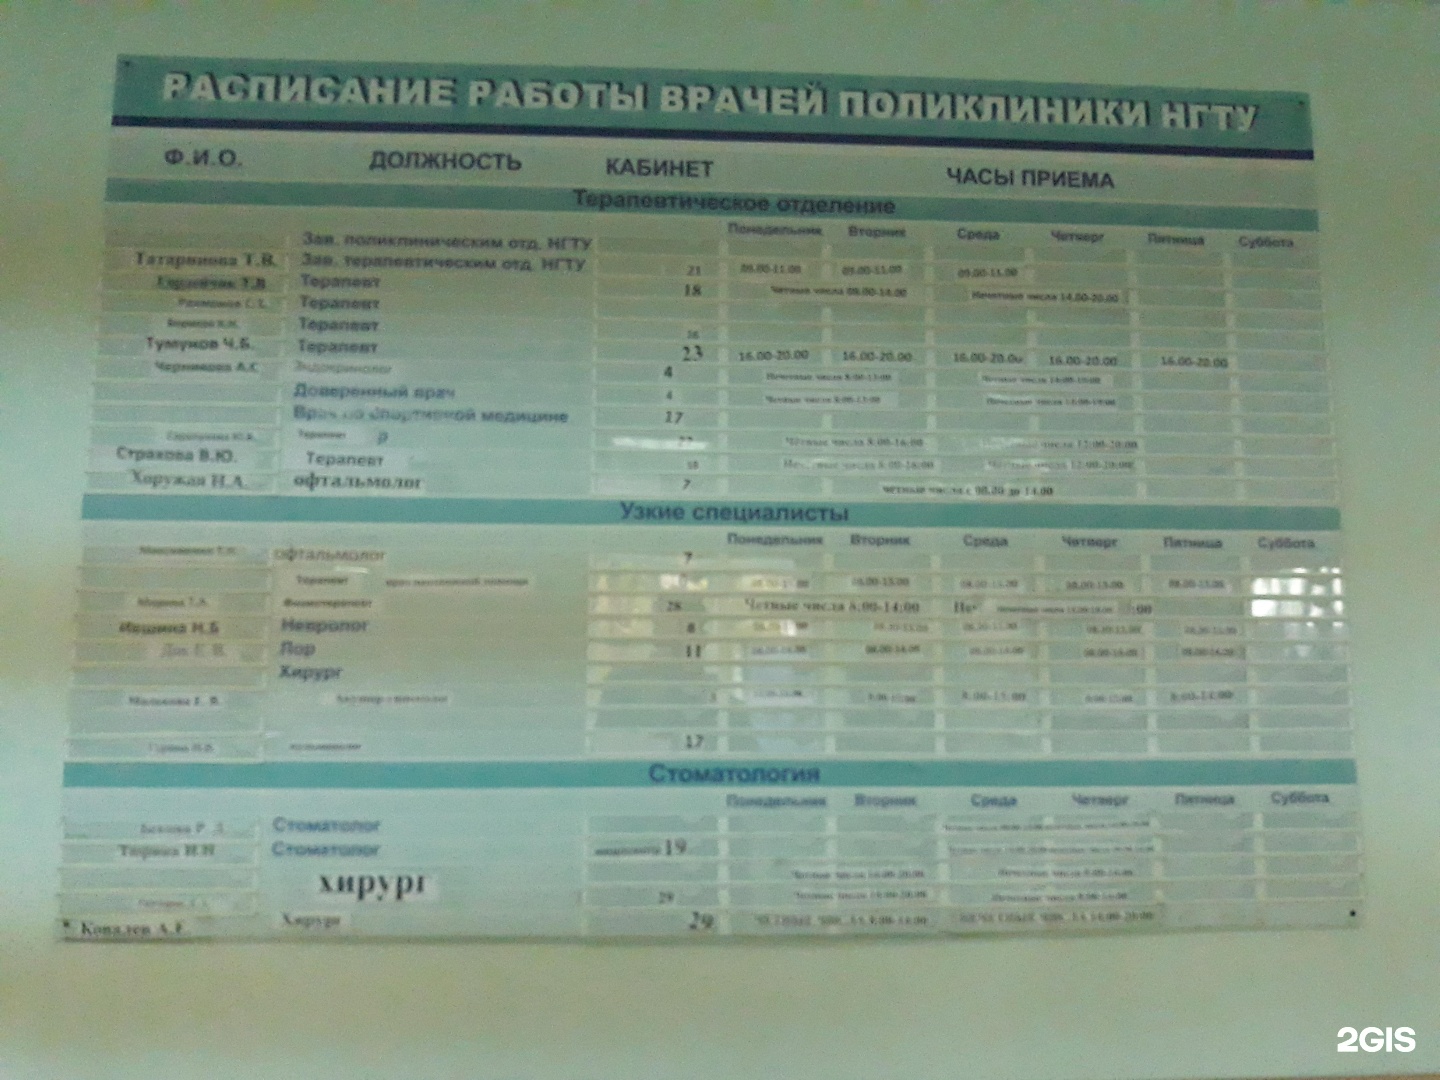 Телефон 16 поликлиники казань. Блюхера 30/1 Новосибирск поликлиника. Поликлиника 16 Новосибирск. Проект поликлиники 16 Новосибирск. ГП 16 поликлиника.